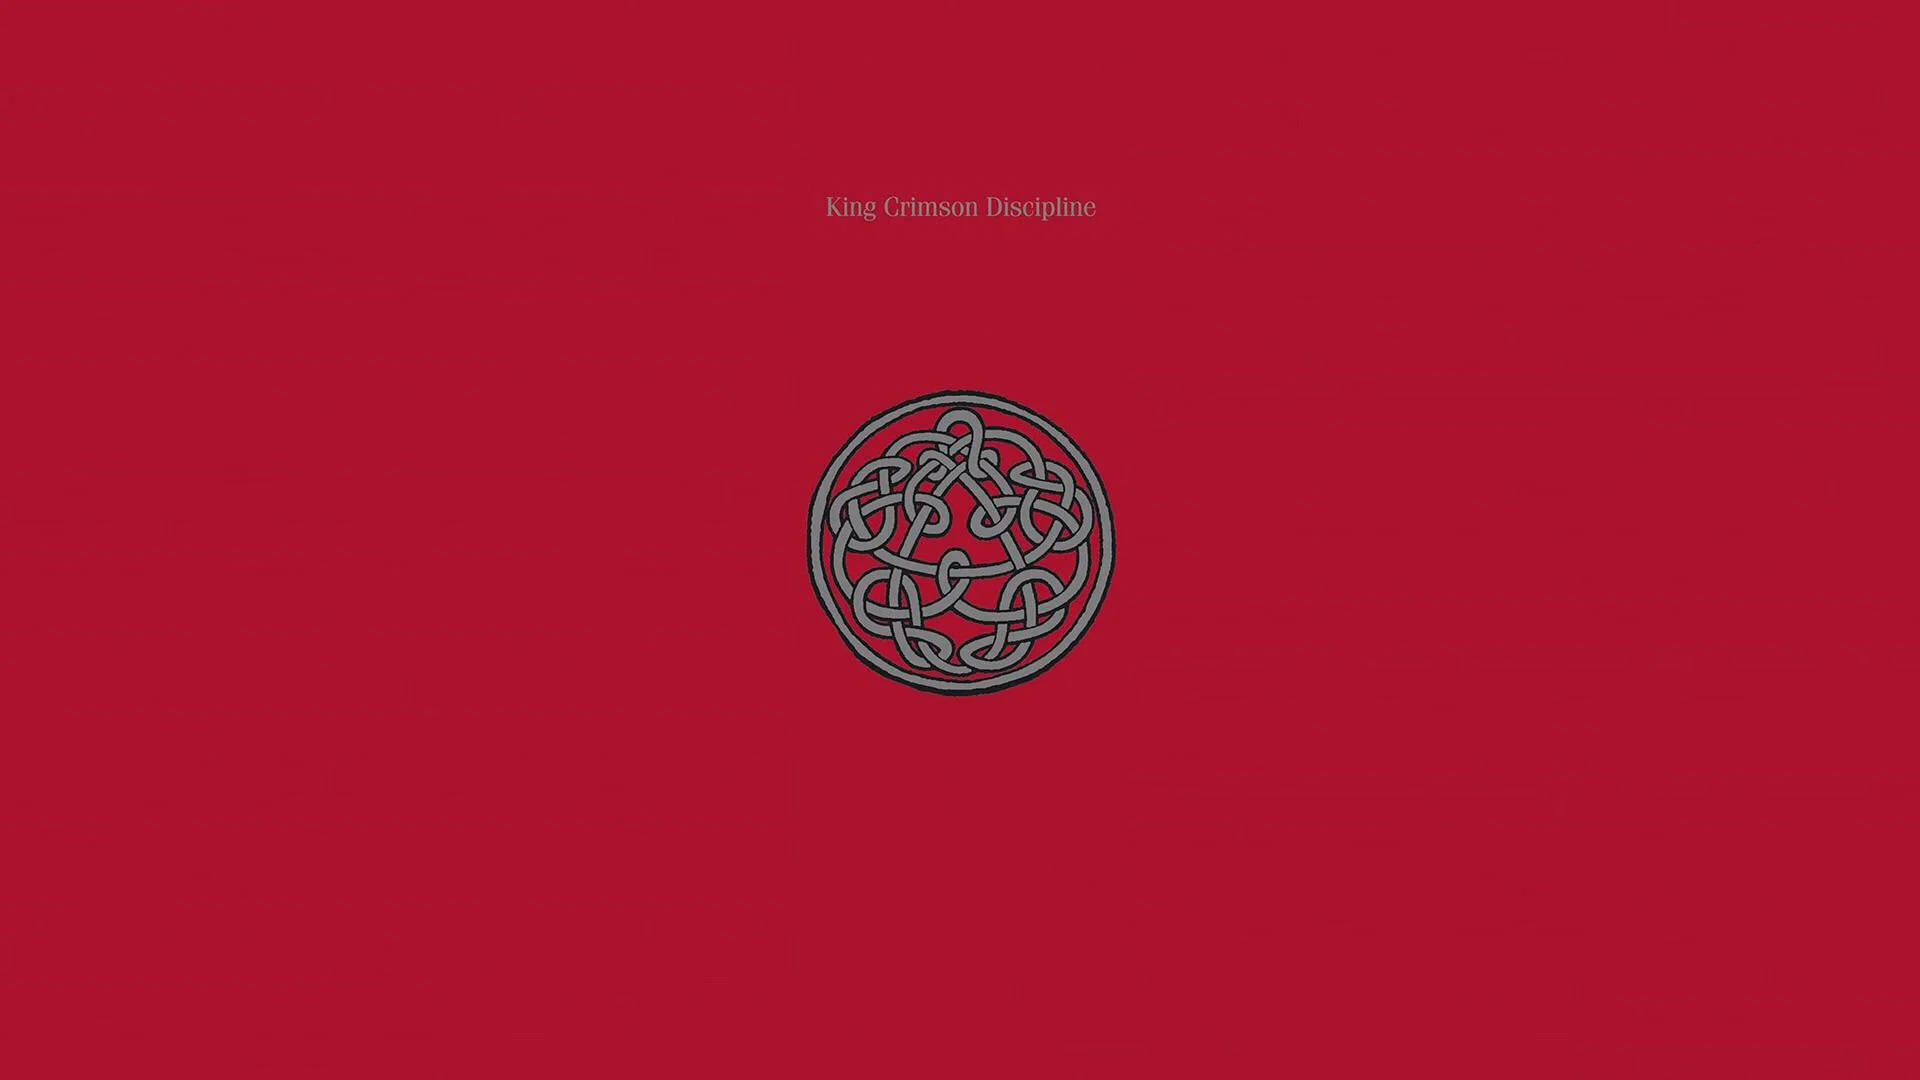 King Crimson Discipline Album Artwork